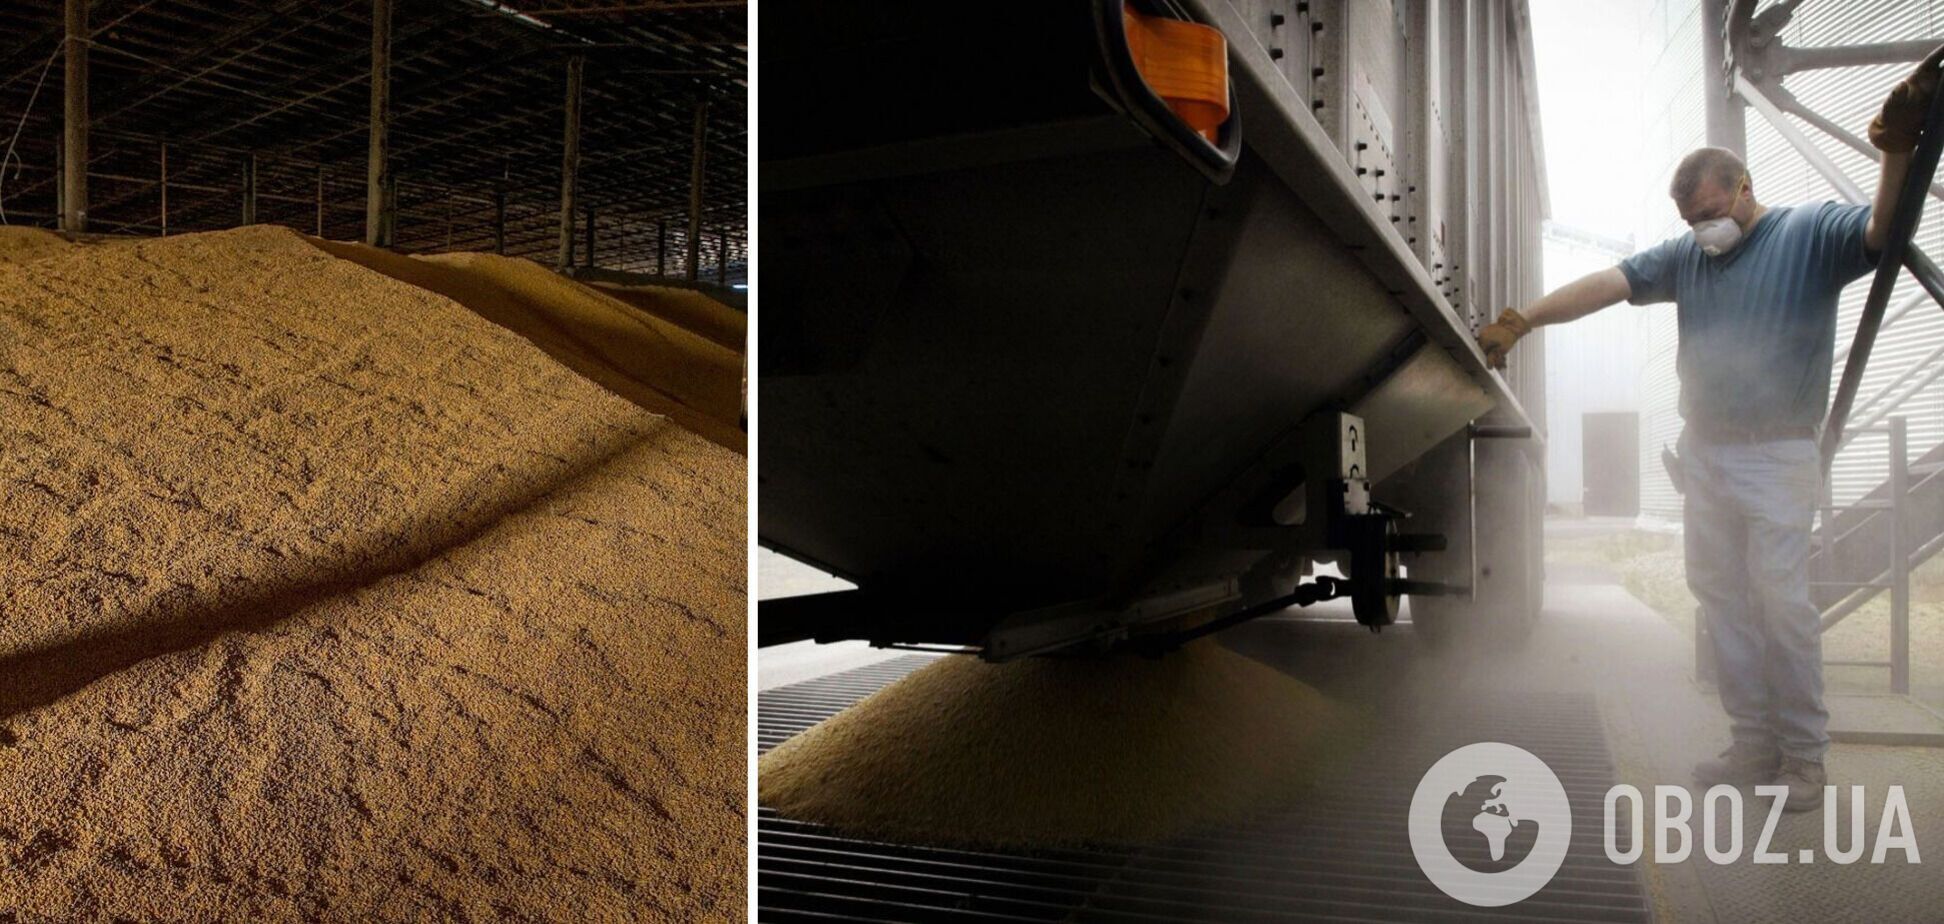 Германия помогает Украине с экспортом зерна